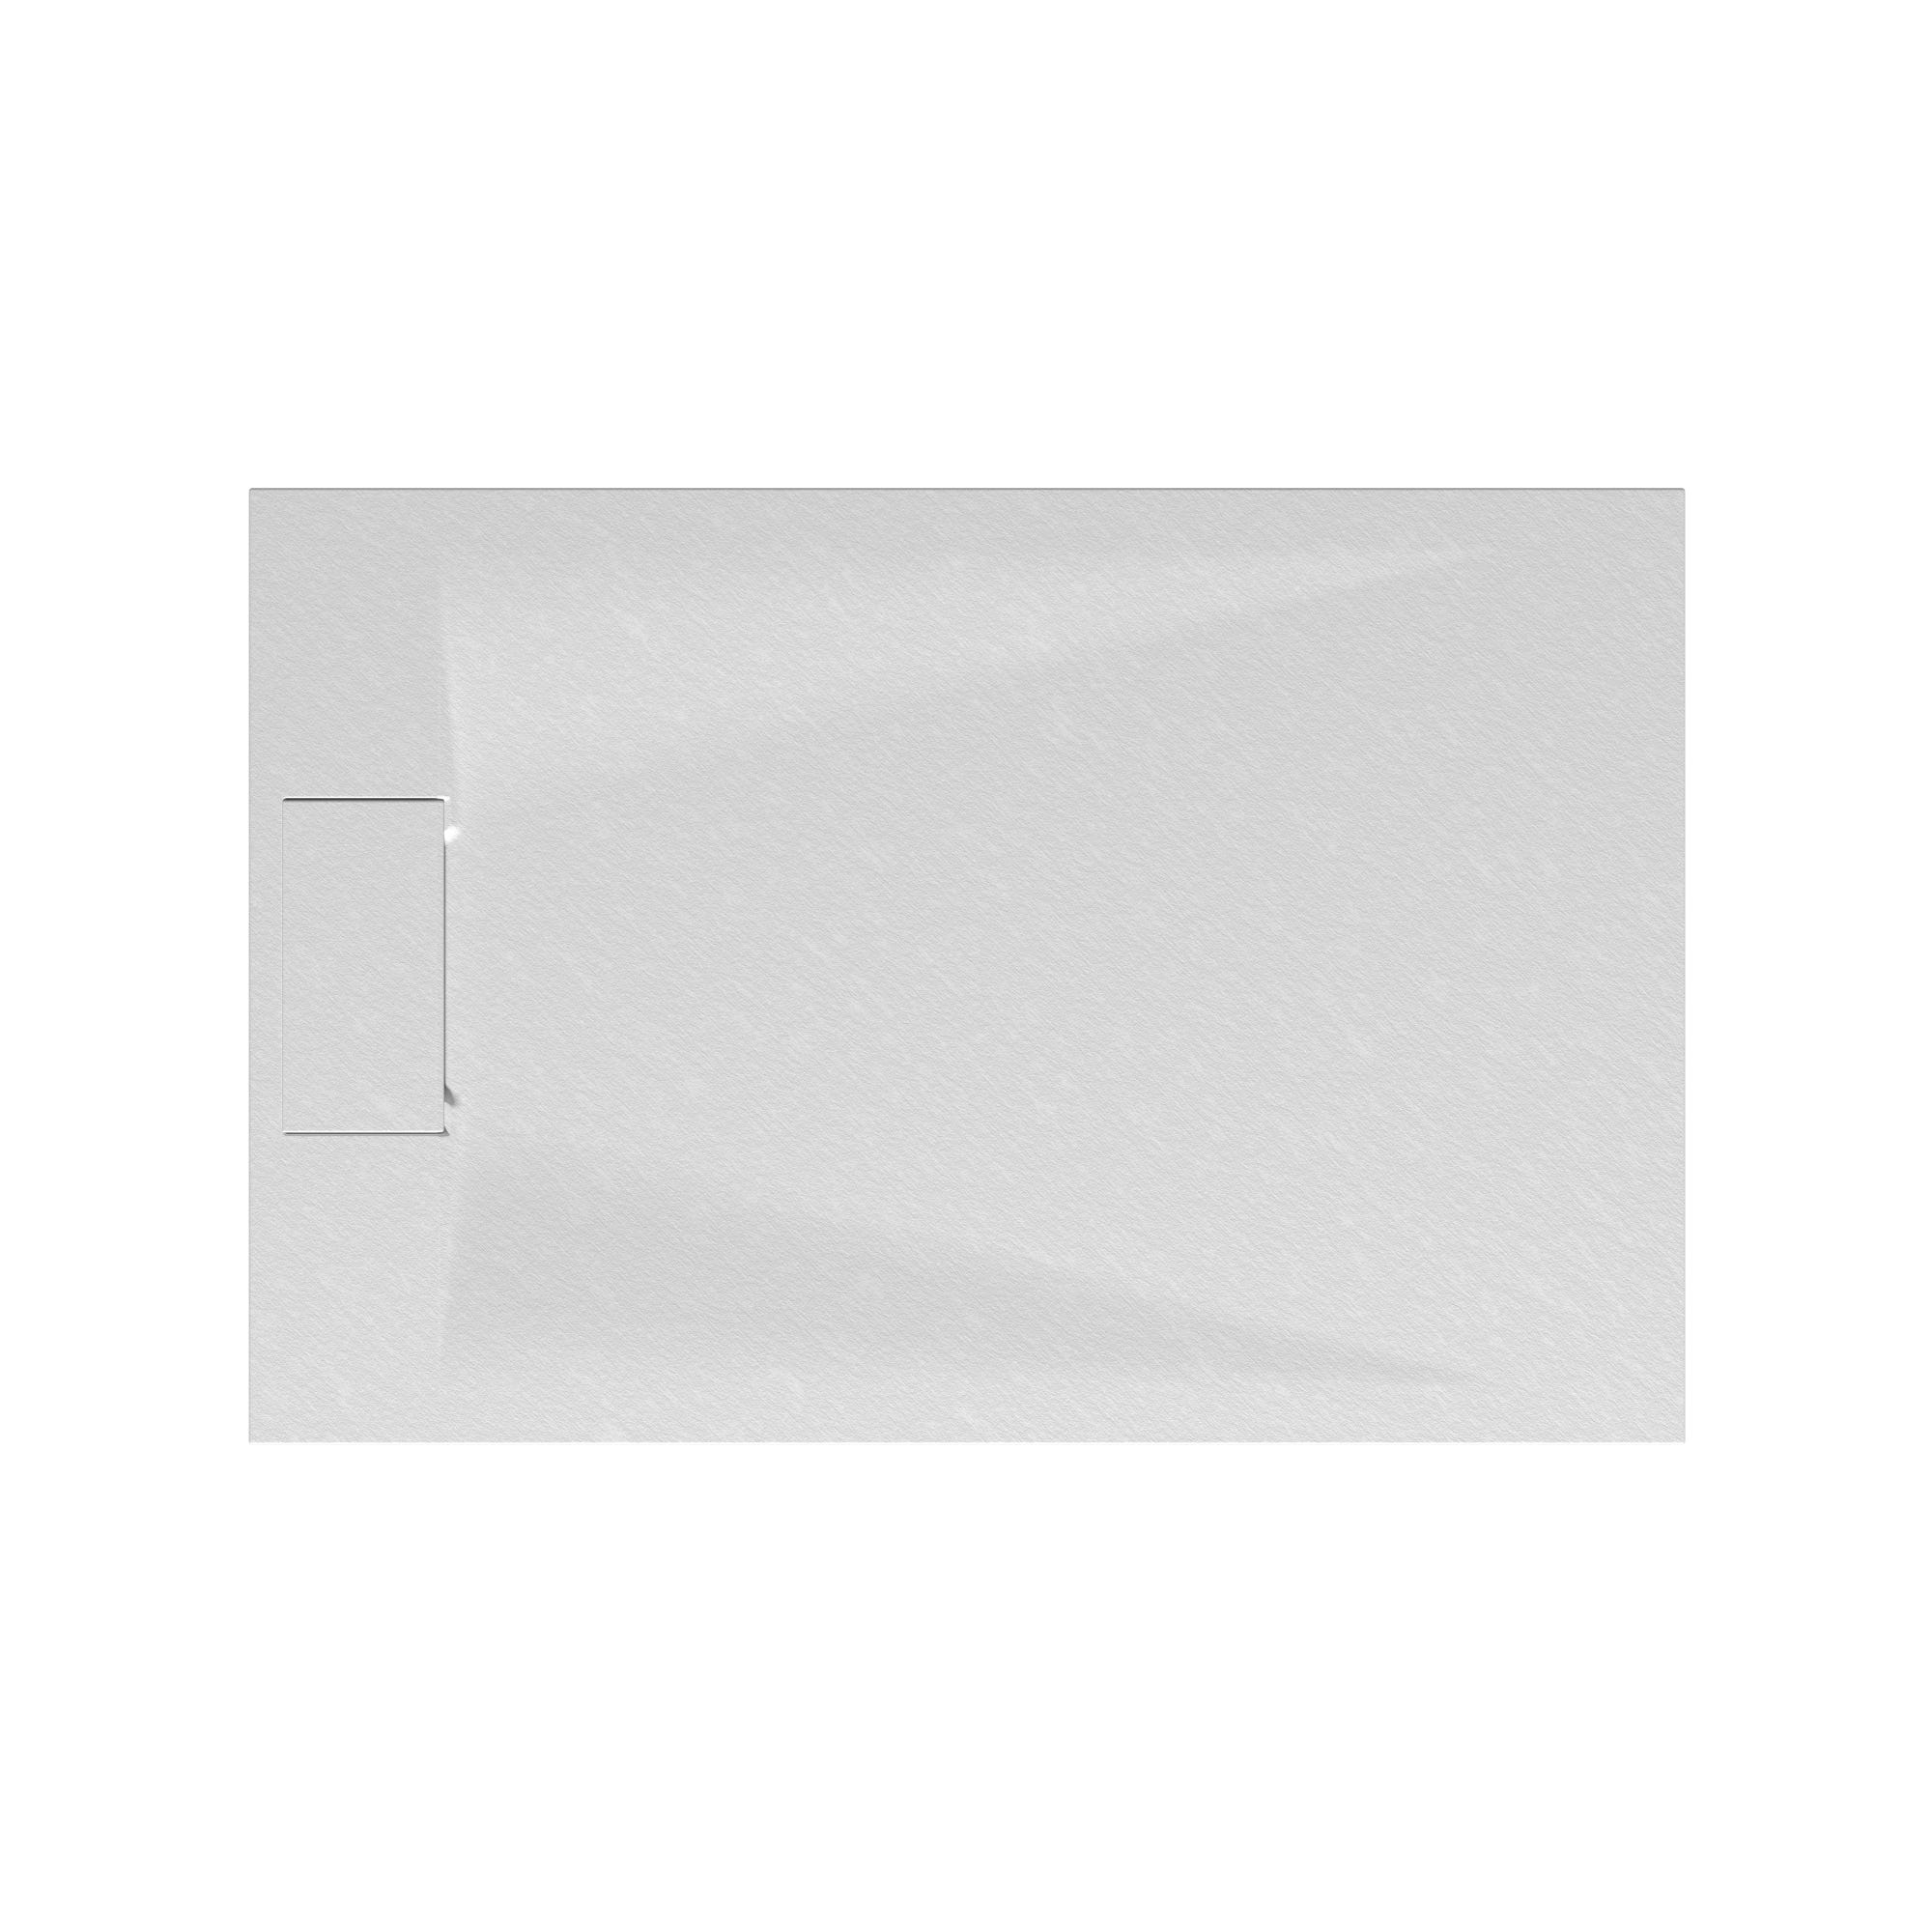 Schulte receveur de douche 80 x 120 x 3,2cm, blanc effet pierre ultra légers, rectangulaire, extra plat à poser ou à encastrer, bac à douche 1